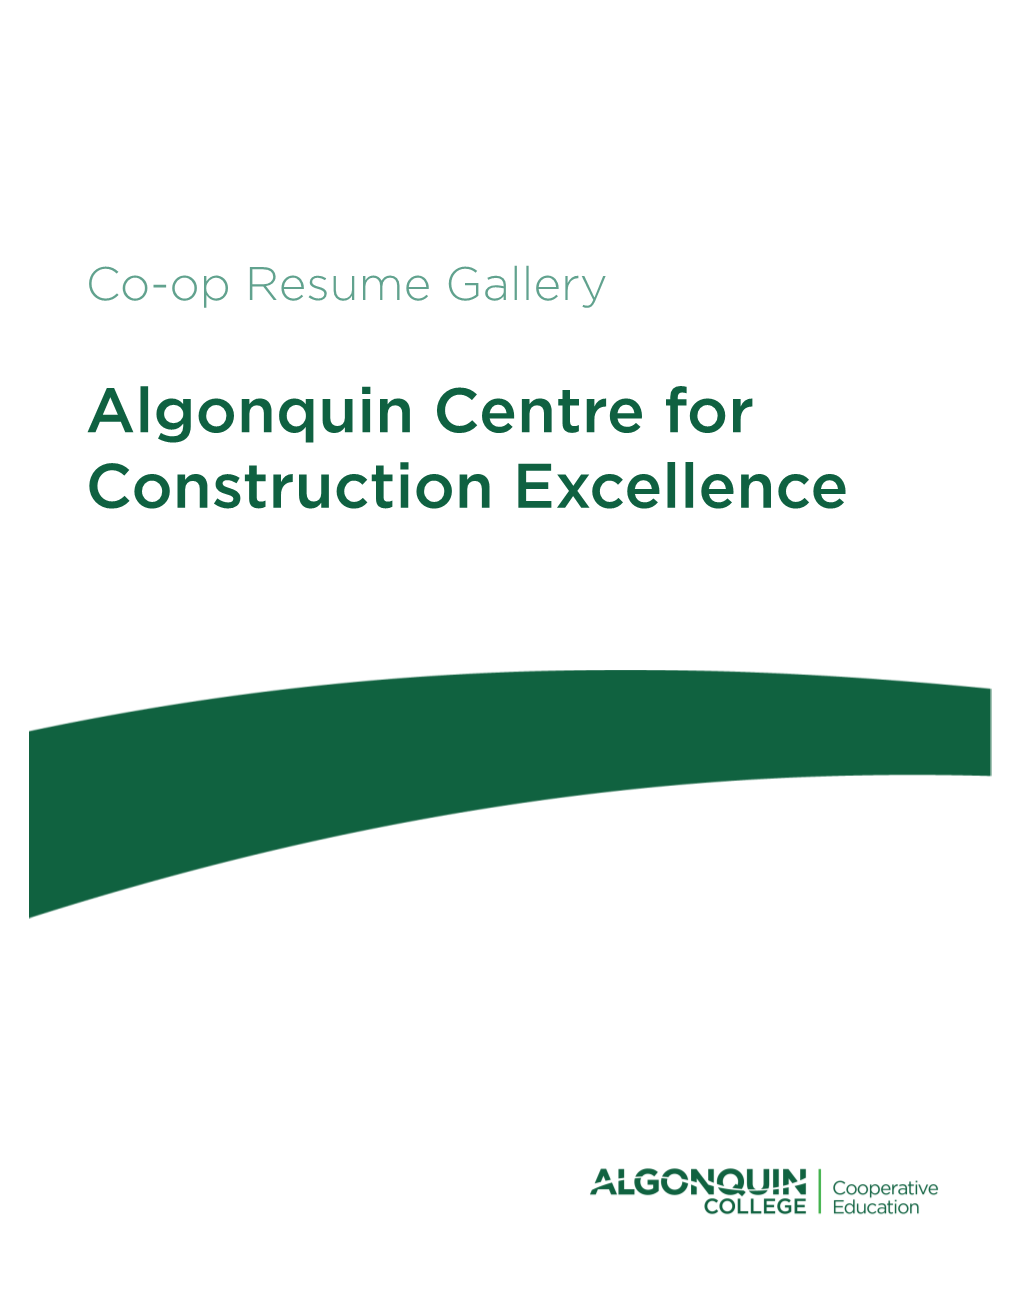 Algonquin Centre for Construction Excellence 2